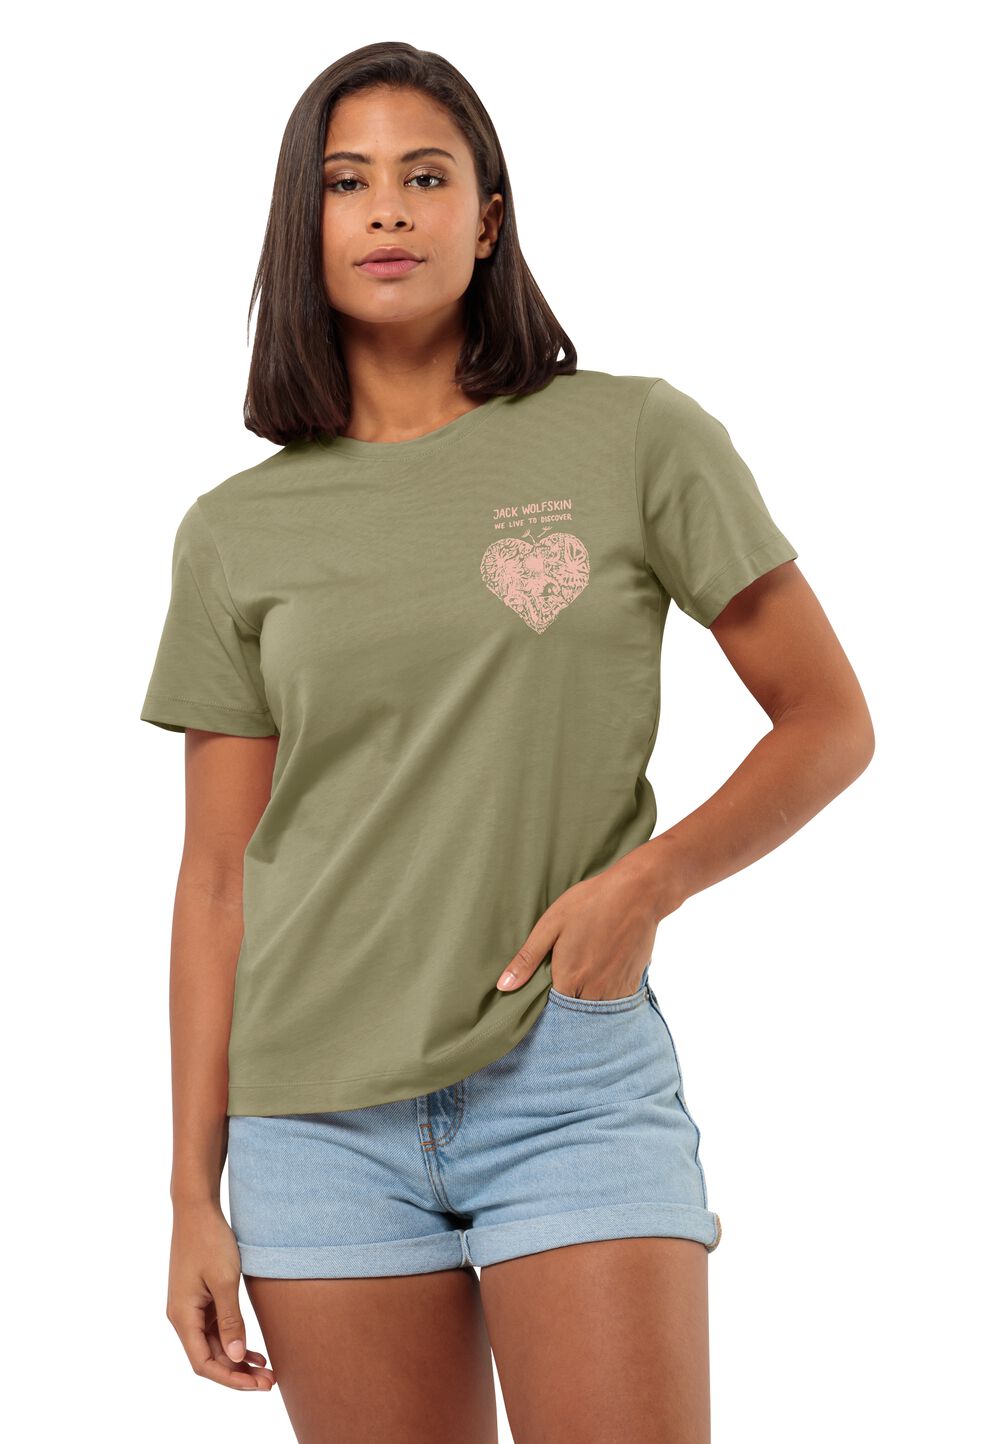 Jack Wolfskin T-Shirt aus Bio-Baumwolle Damen Discover Heart T-Shirt Women XS braun bay leaf von Jack Wolfskin